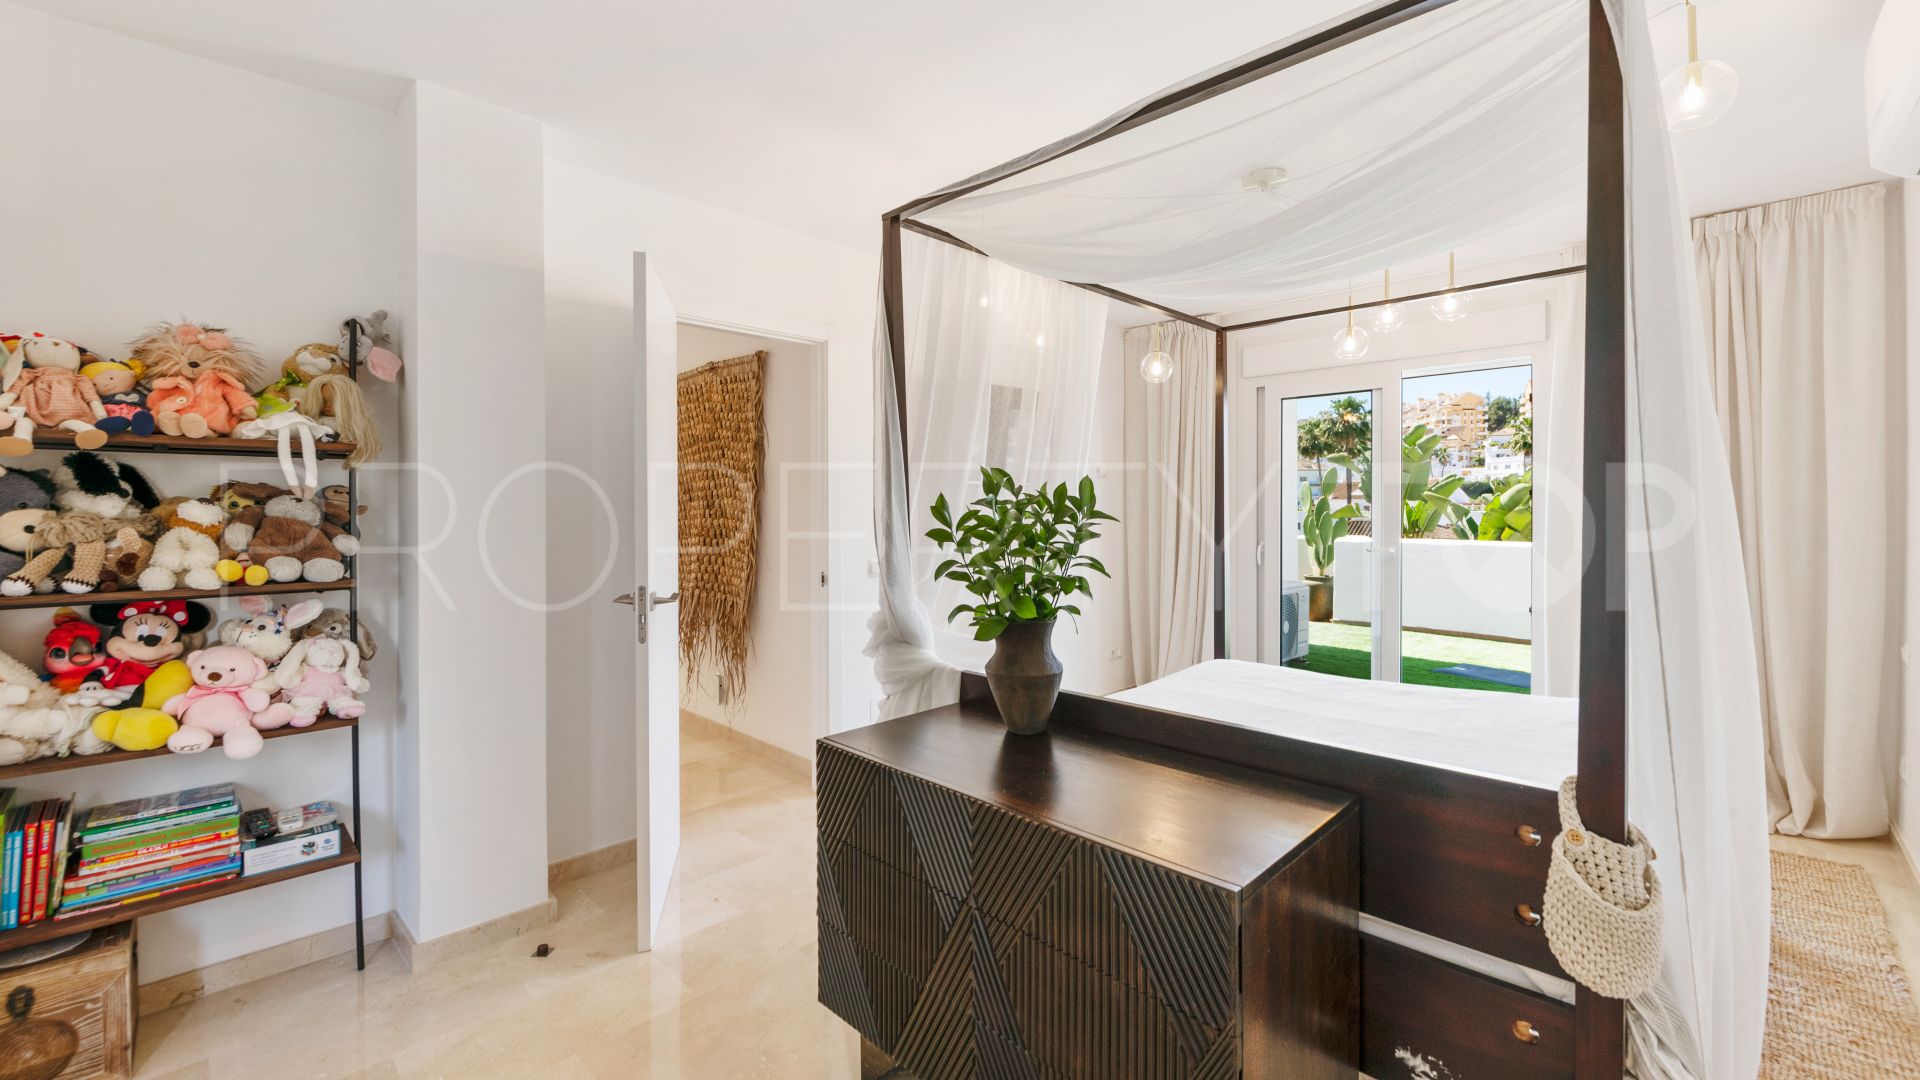 6 bedrooms villa in Atalaya de Rio Verde for sale